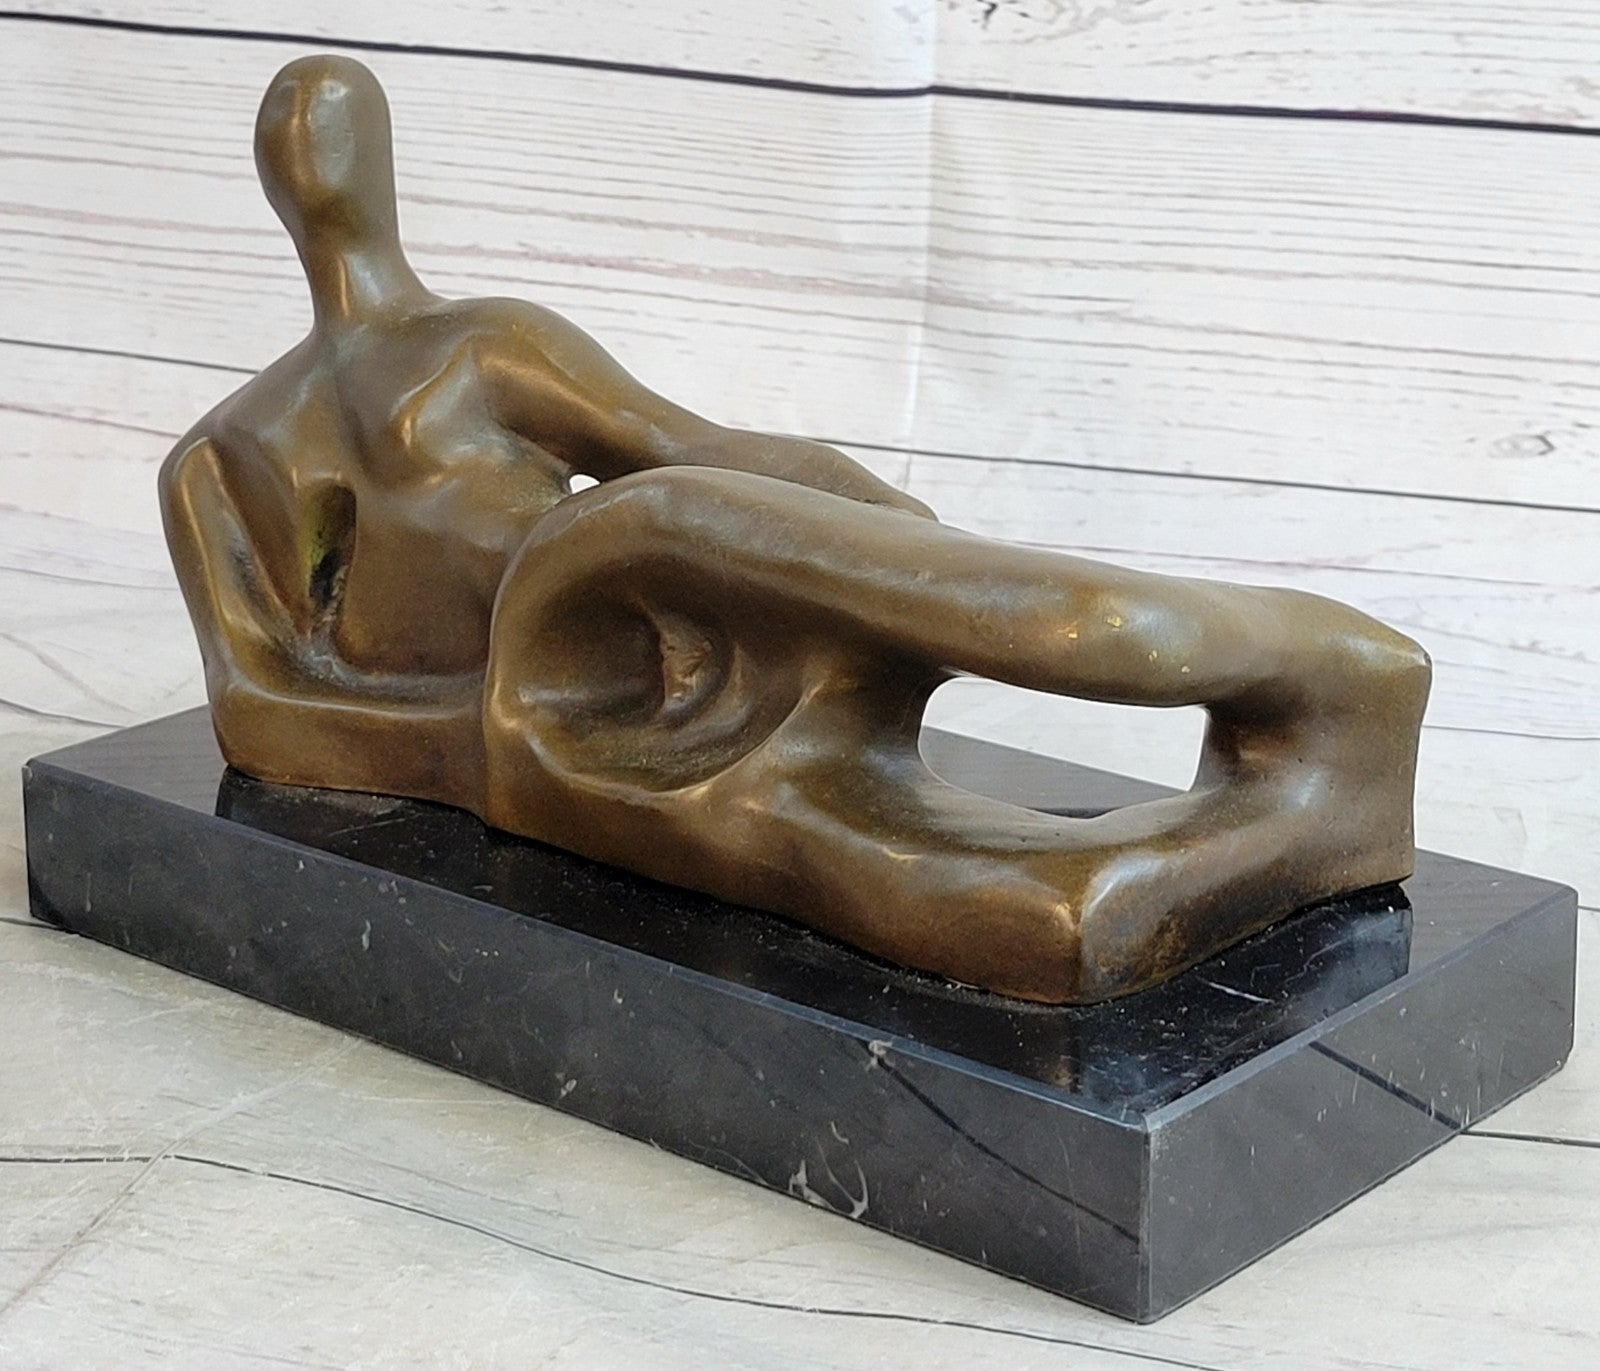 Abstract Modern Art Reclining Female Hot Cast Bronze Sculpture Figurine Figure